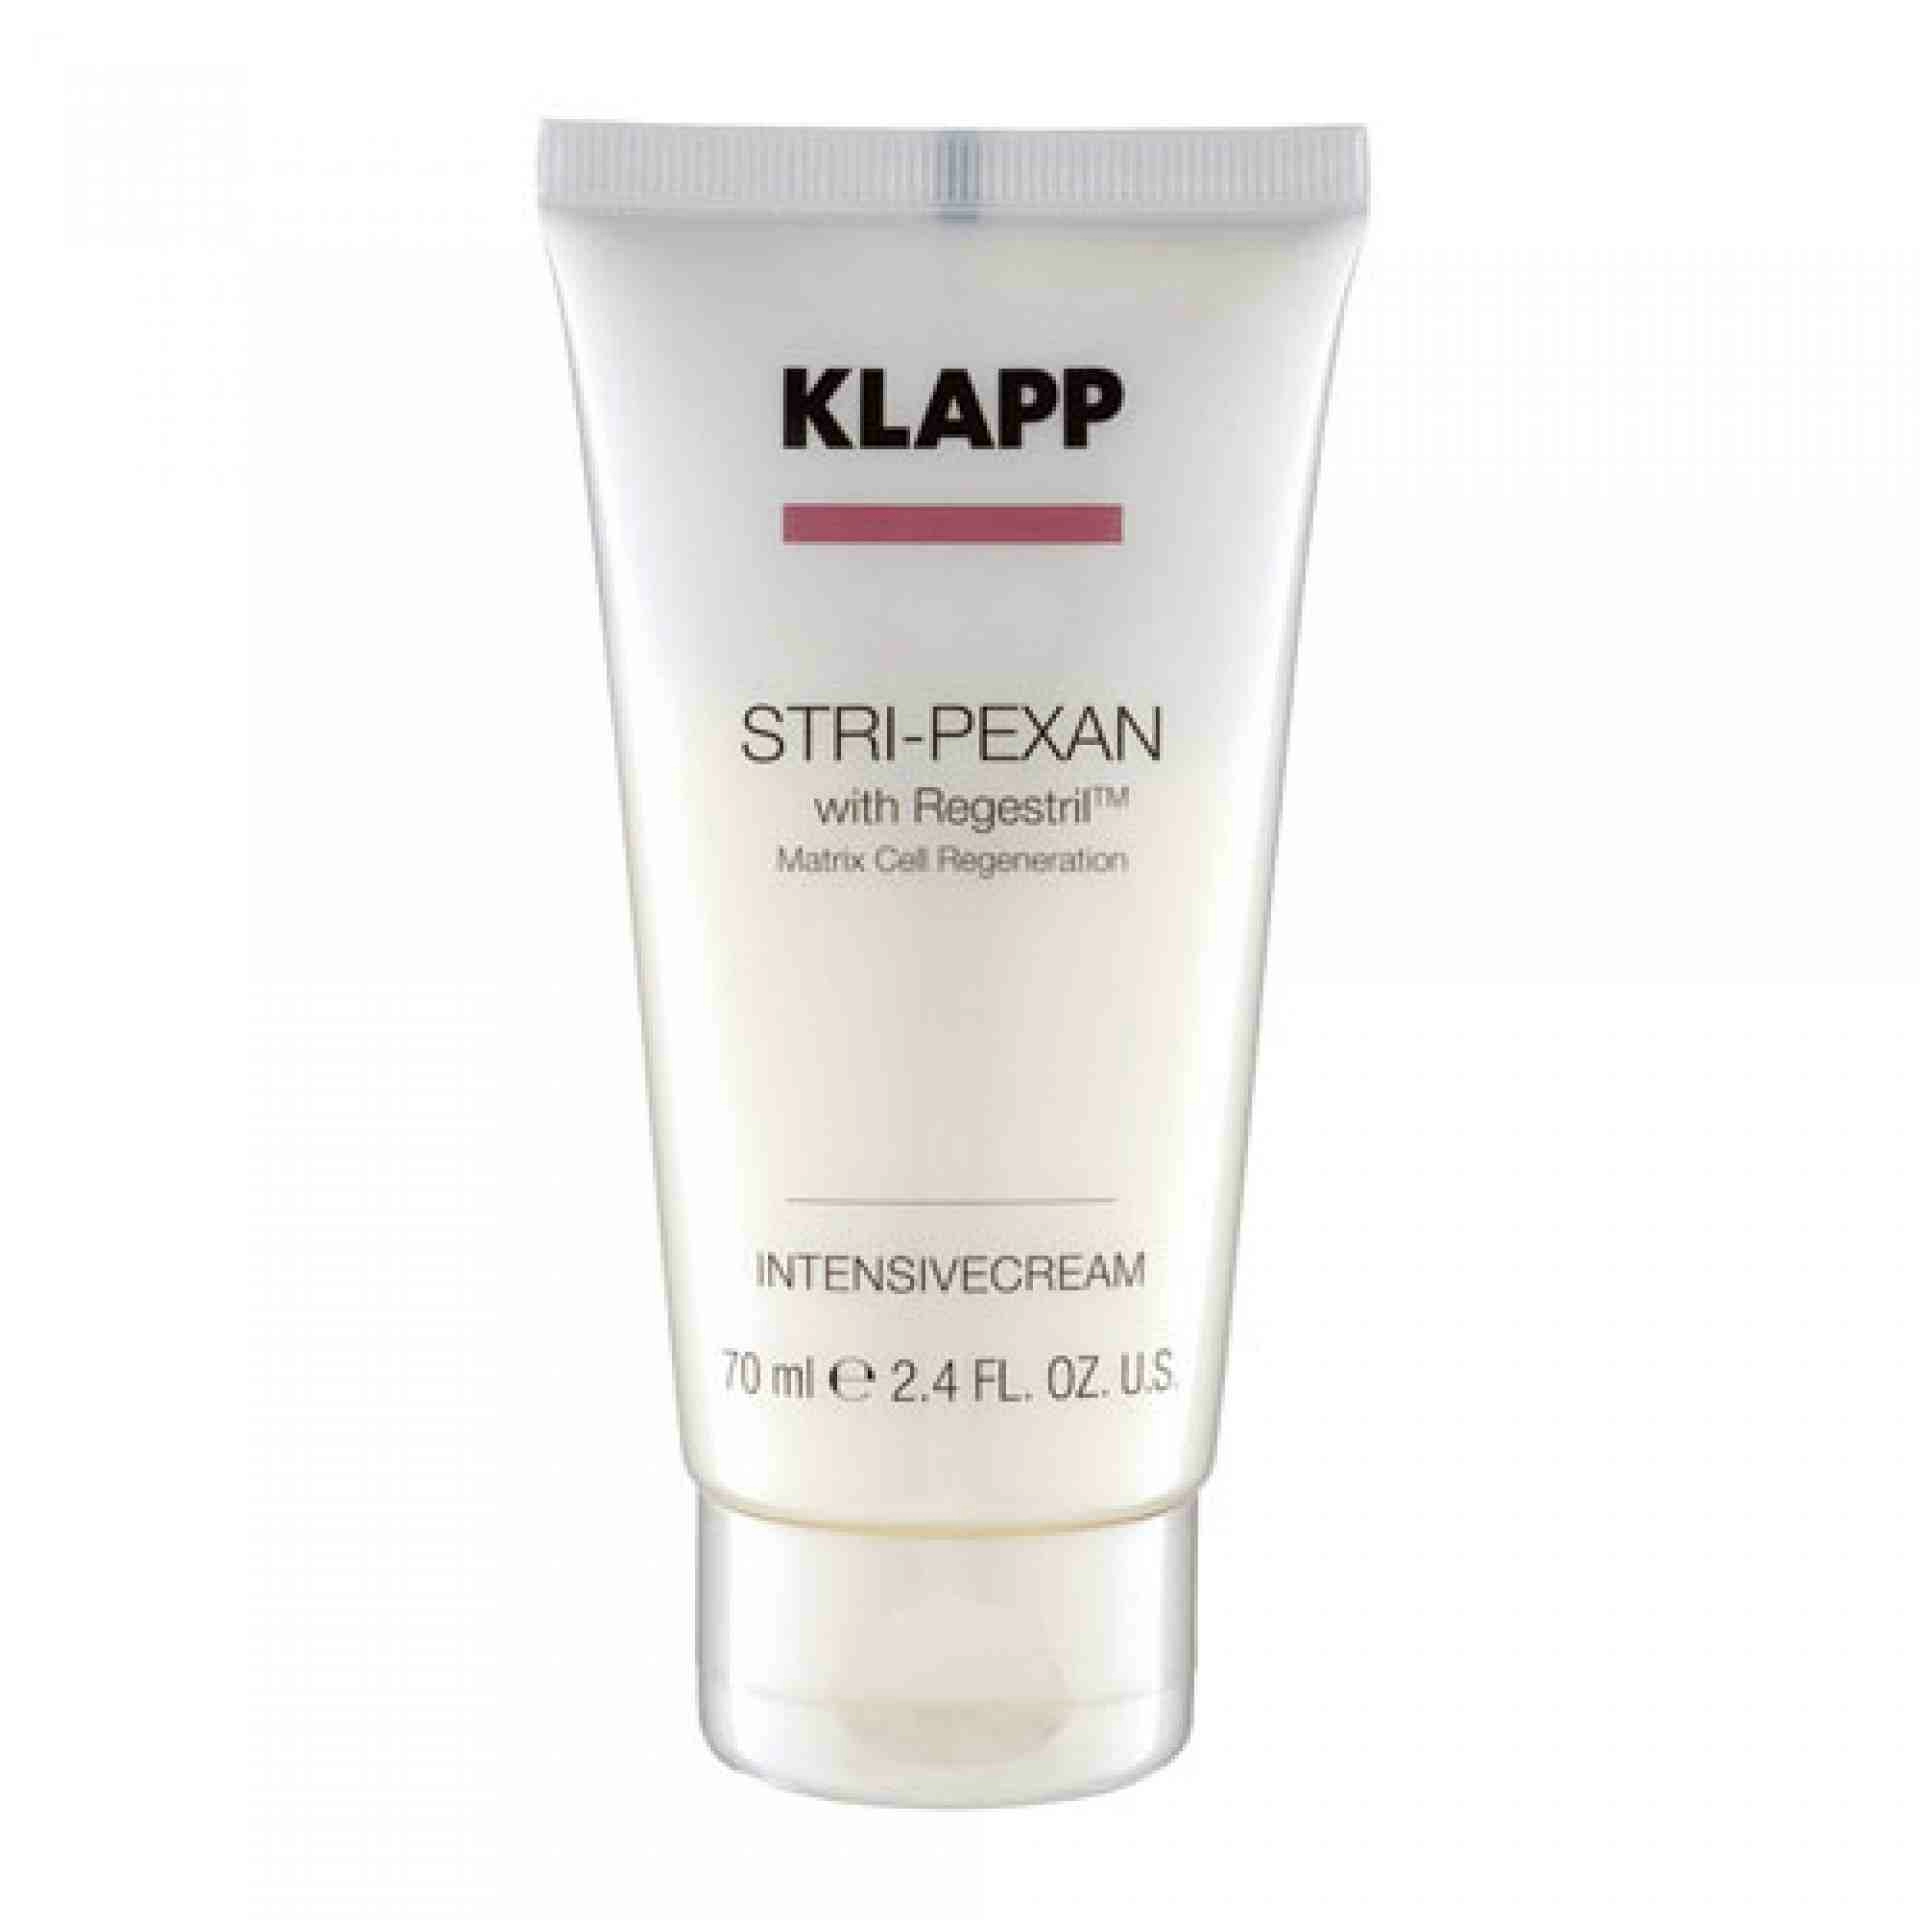 Intensive Cream | Crema Regeneradora 70ml - Stri-Pexan con Regestril - Klapp ®